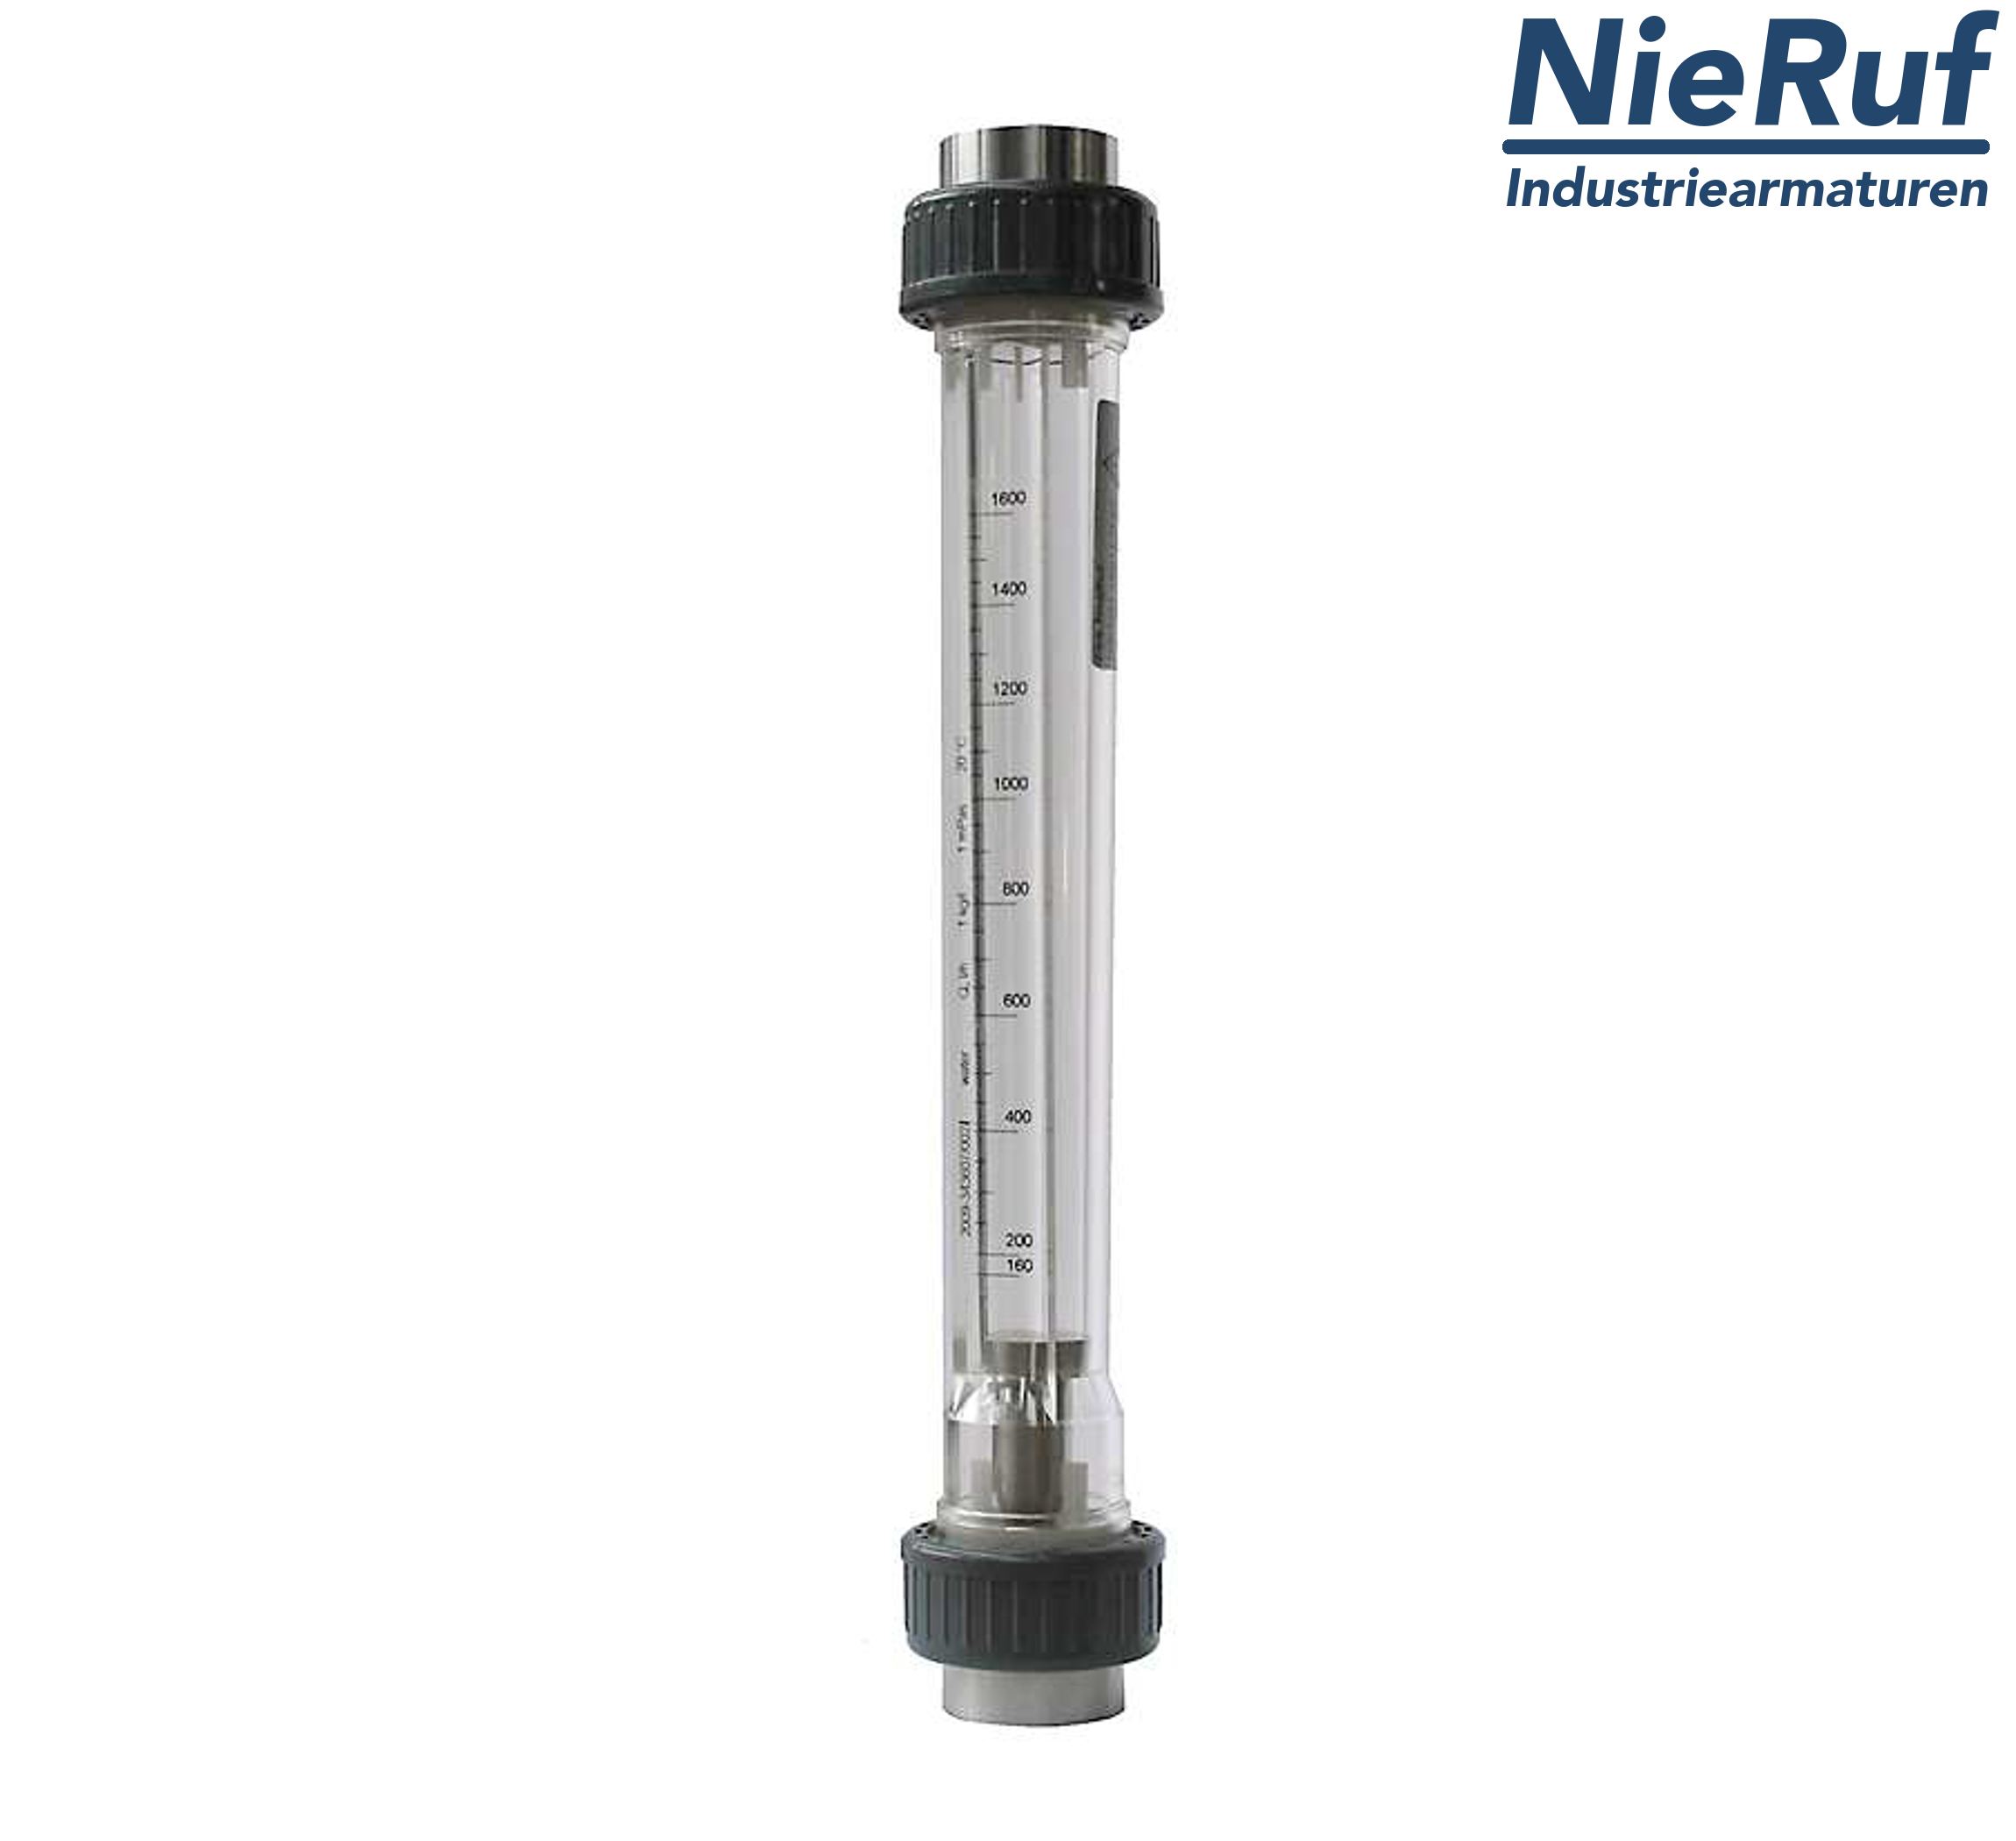 débitmètre à flotteur 3/4" pouce 160,0 - 1600 l/h eau NBR